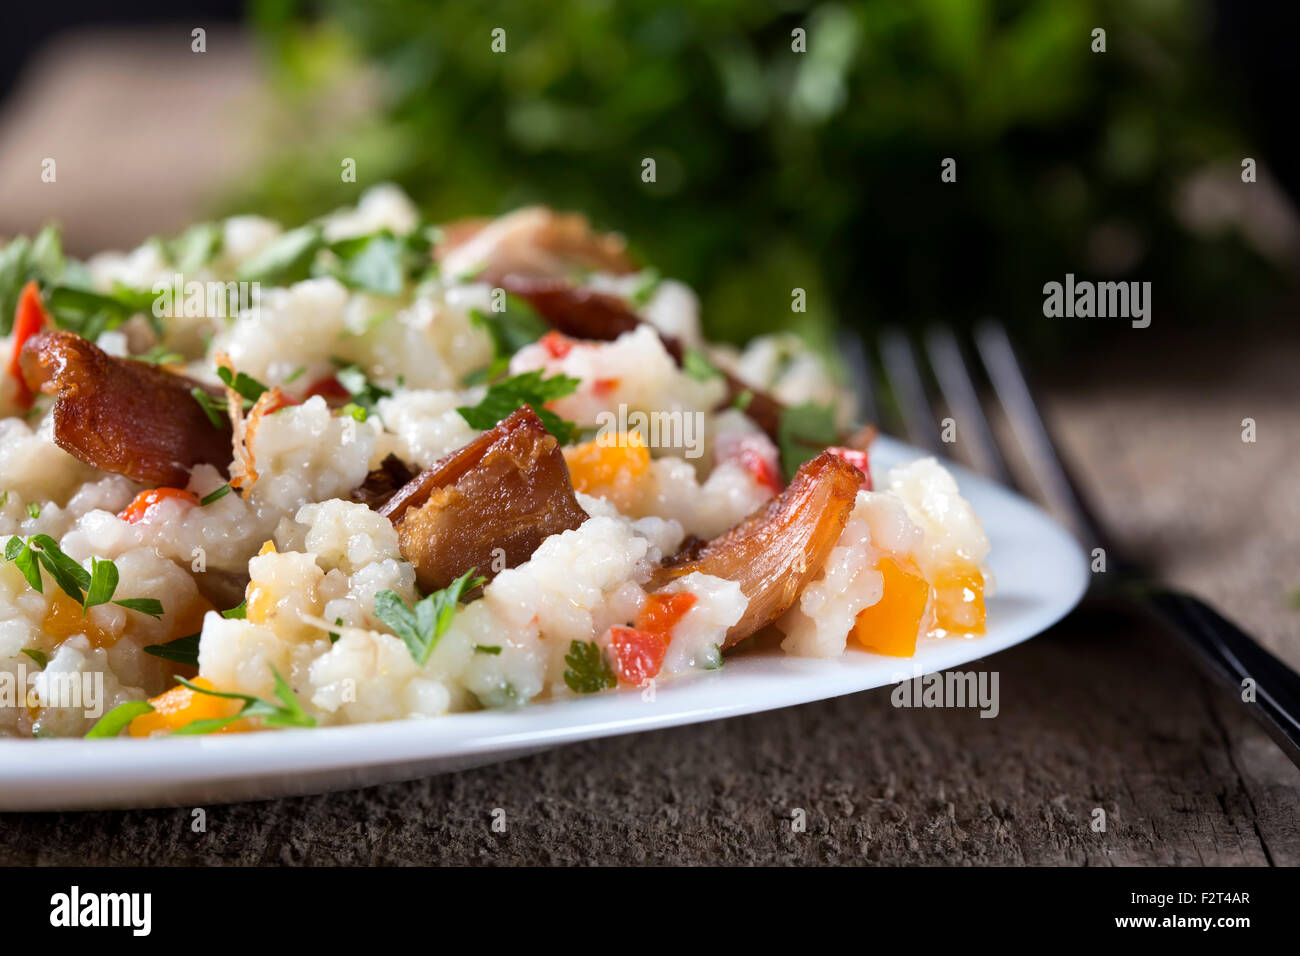 Platte mit traditionellen scharfes Essen genannt servieren, auf hölzernen Hintergrund. Mit gebratenem Huhn, Reis, Knoblauch und Karotten gekocht Stockfoto